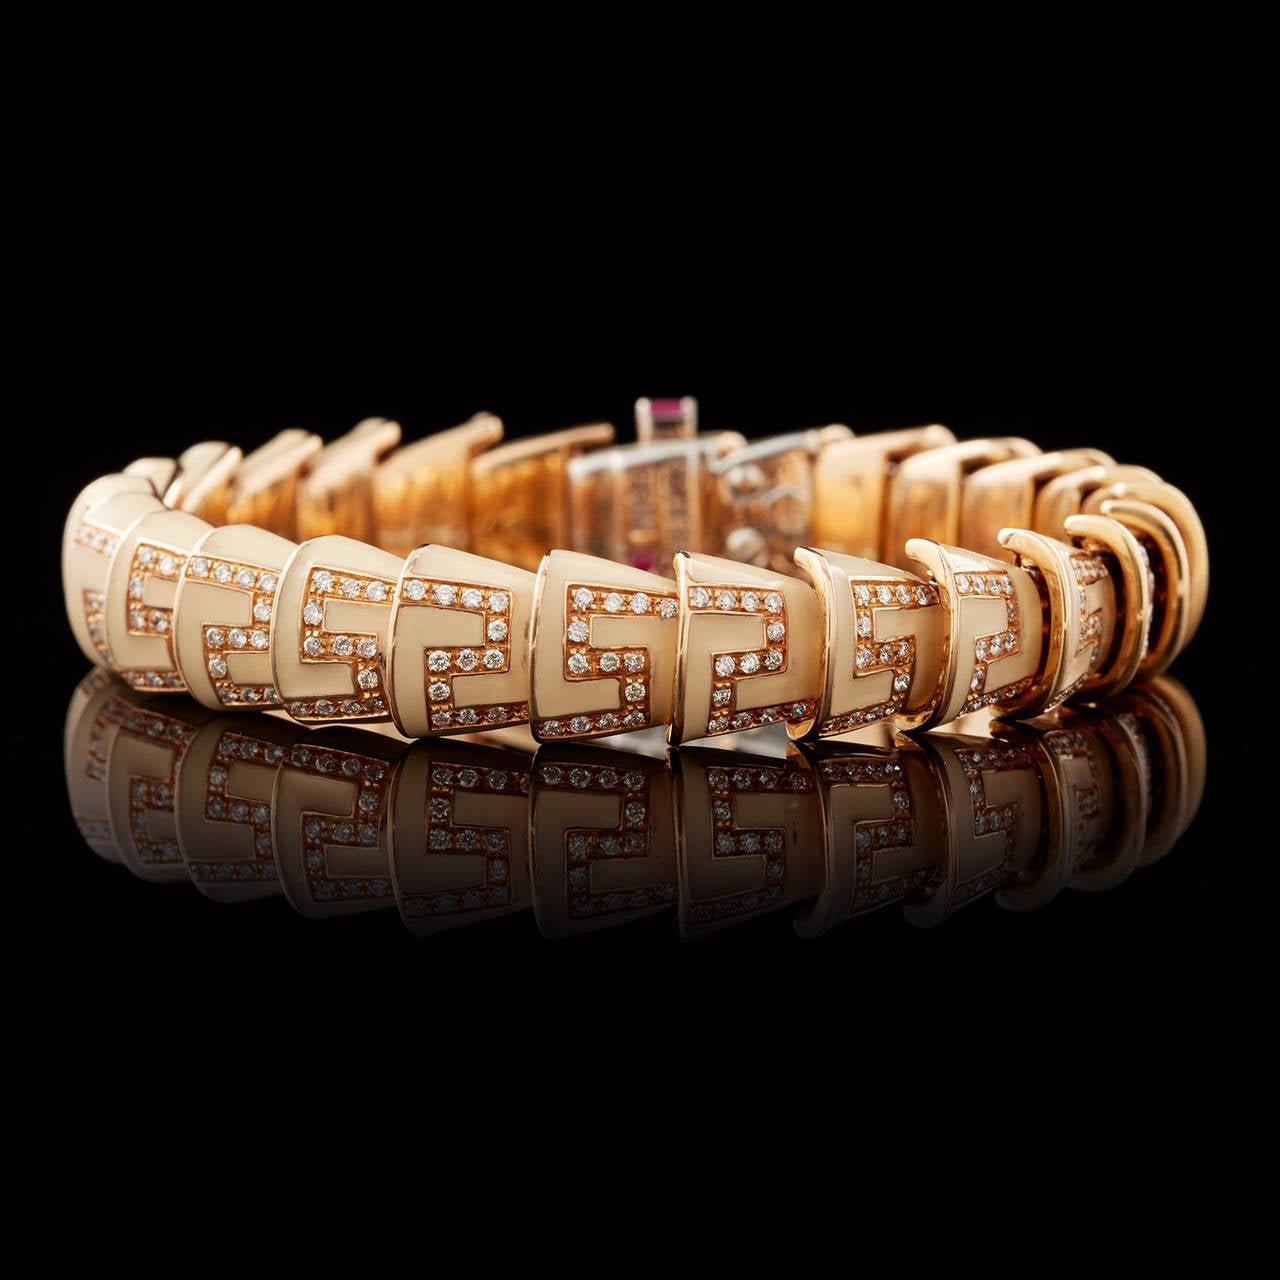 Bracelet Roberto Coin Cobra en émail couleur crème rehaussé de 1,76 carats de diamants ronds brillants sertis en or rose 18 carats. Ce bracelet mesure 7″ L x 0,38″ W et pèse 49,5 grammes au total.